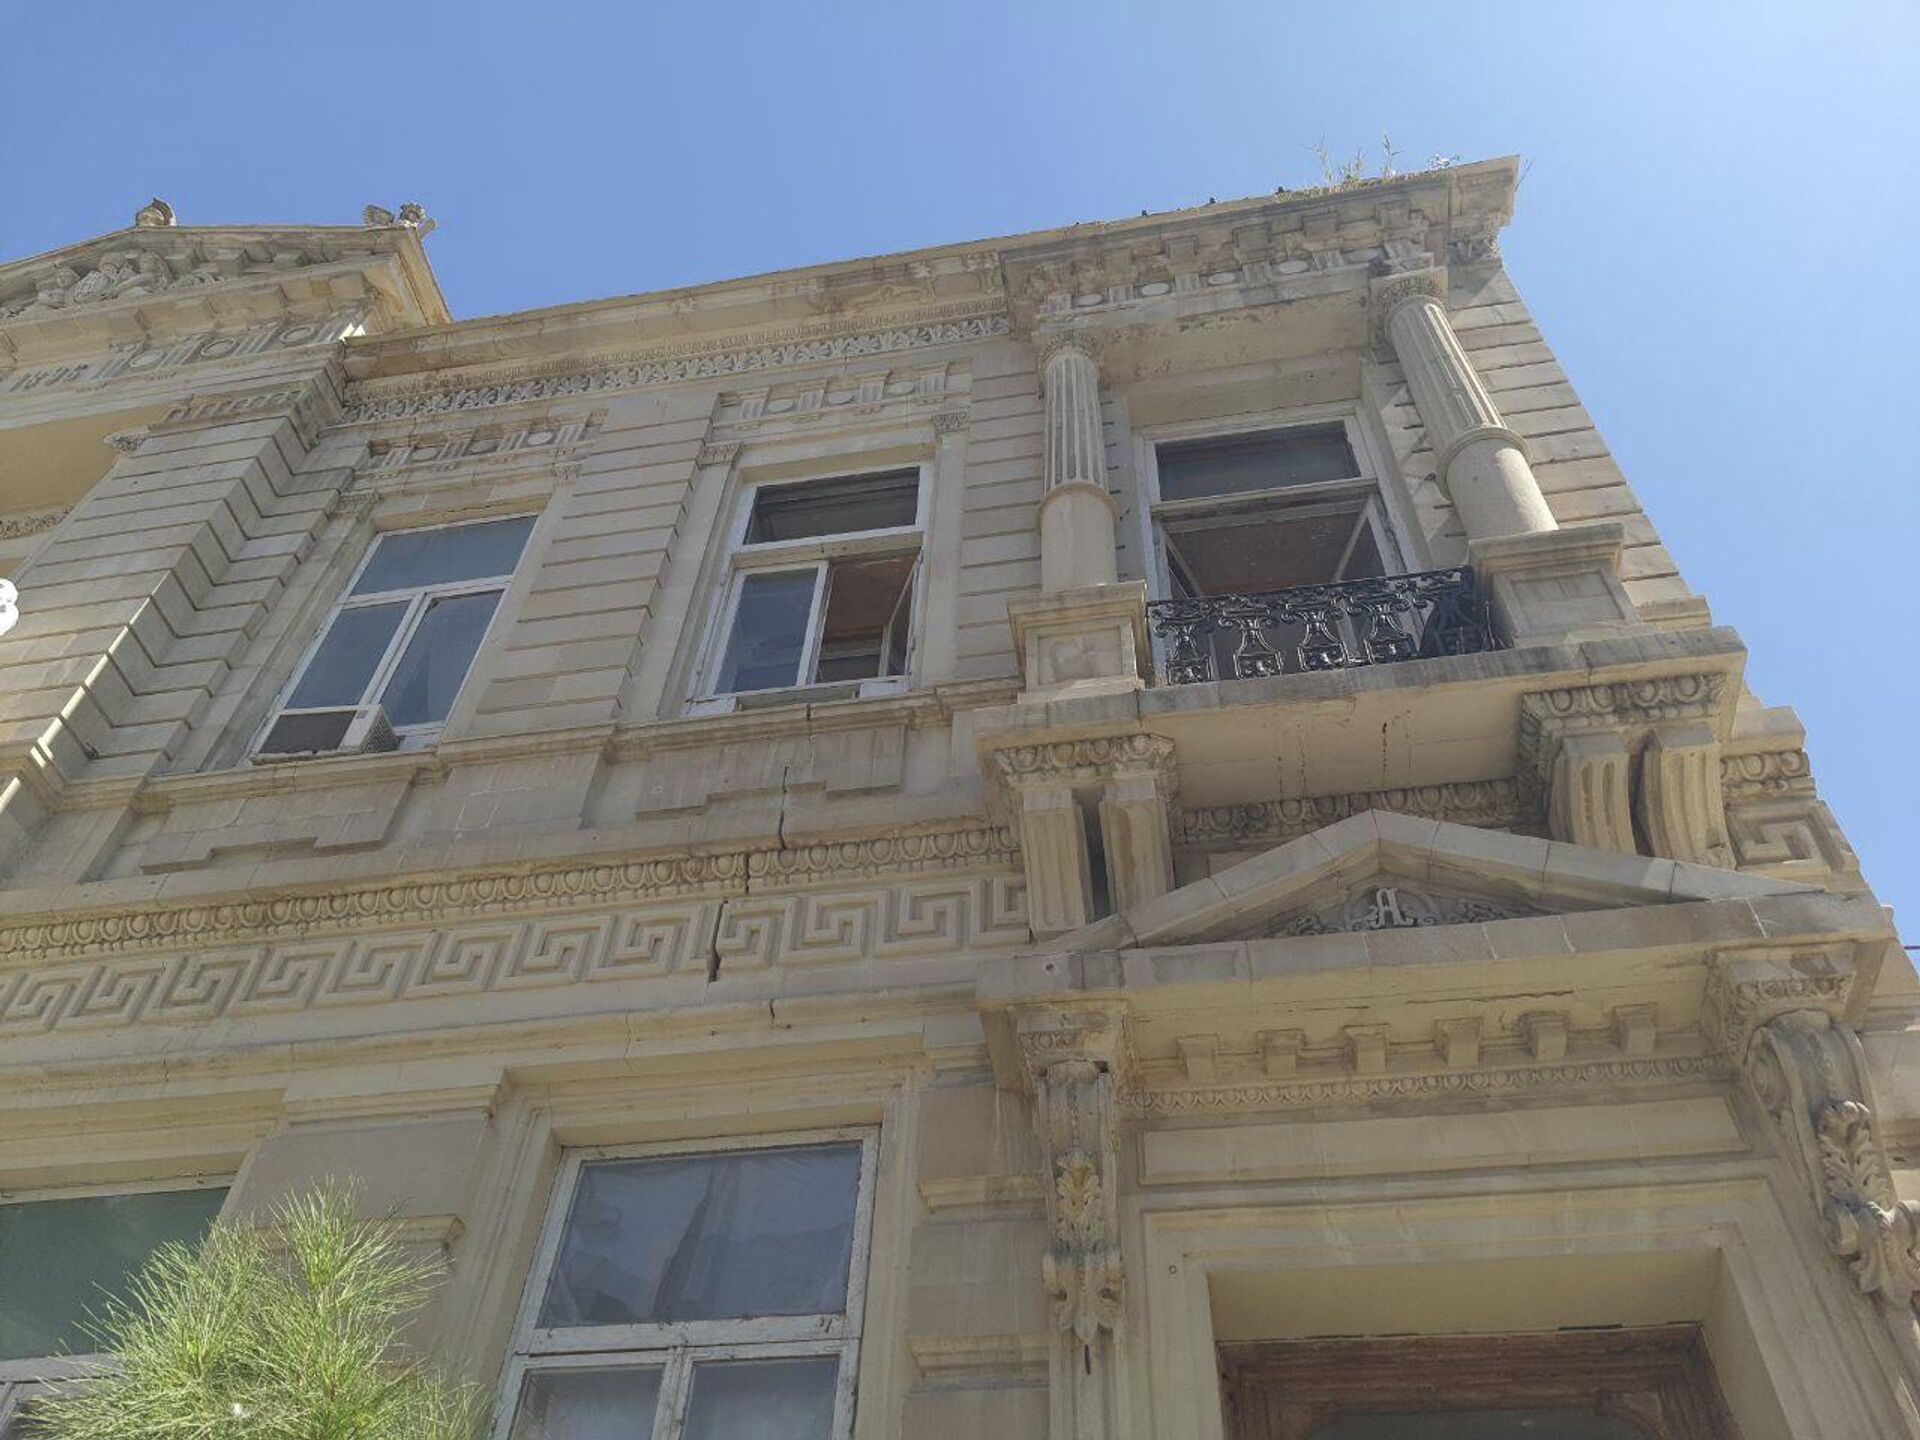 Дом с грифонами», расположенный на улице Юсифа Мамедалиева под номером 20 - Sputnik Азербайджан, 1920, 25.08.2022